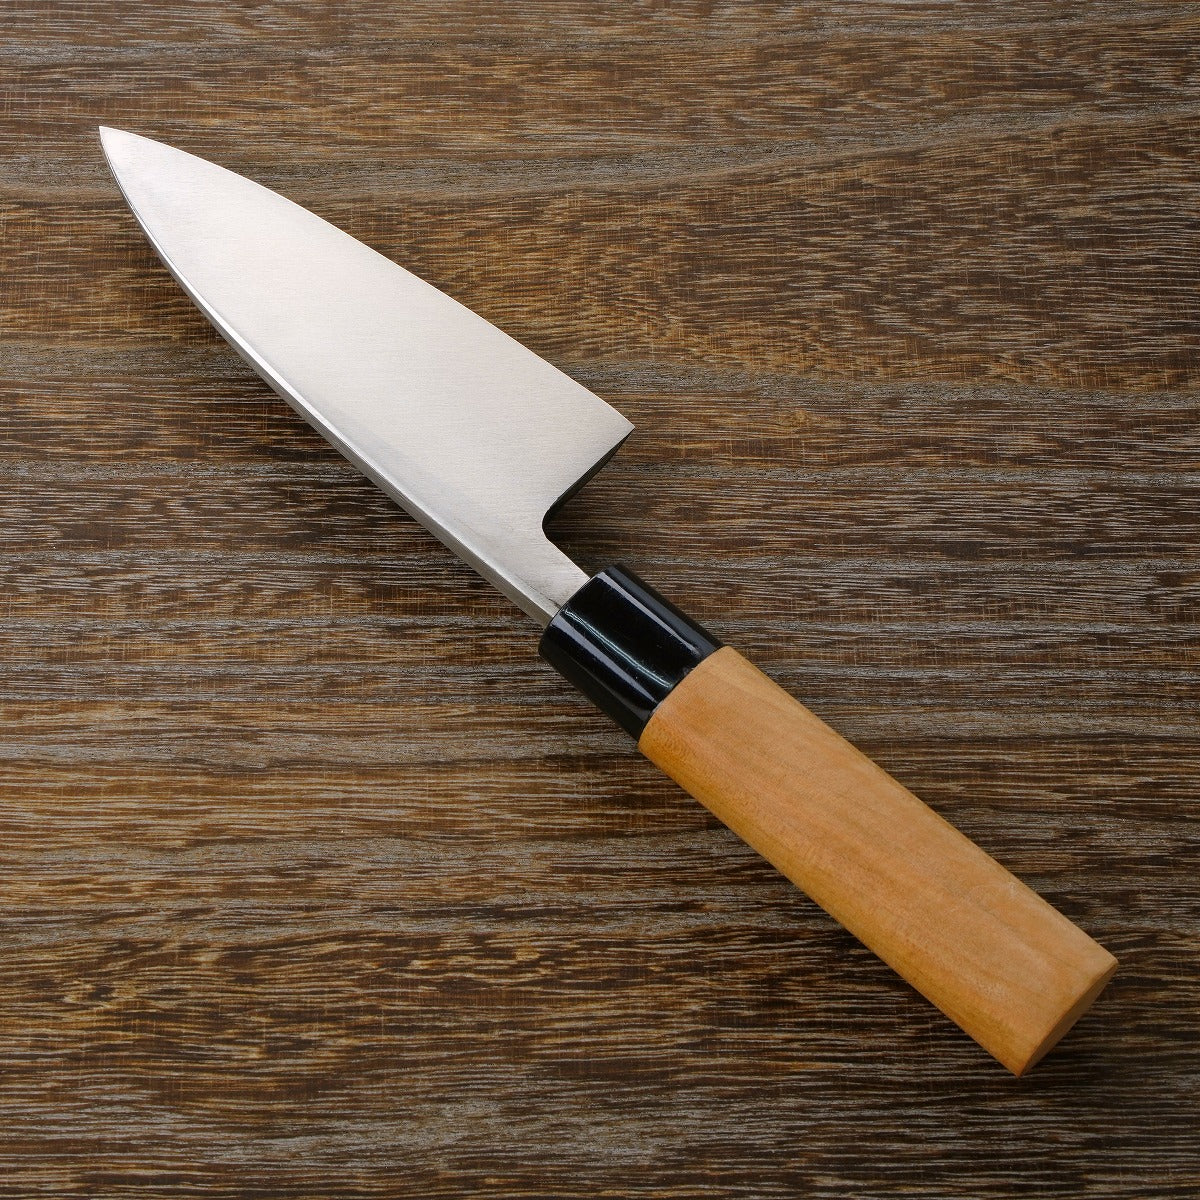 HONMAMON Deba (Butcher Knife) Ginsan Stainless Steel, 135mm~180mm for Left Hander